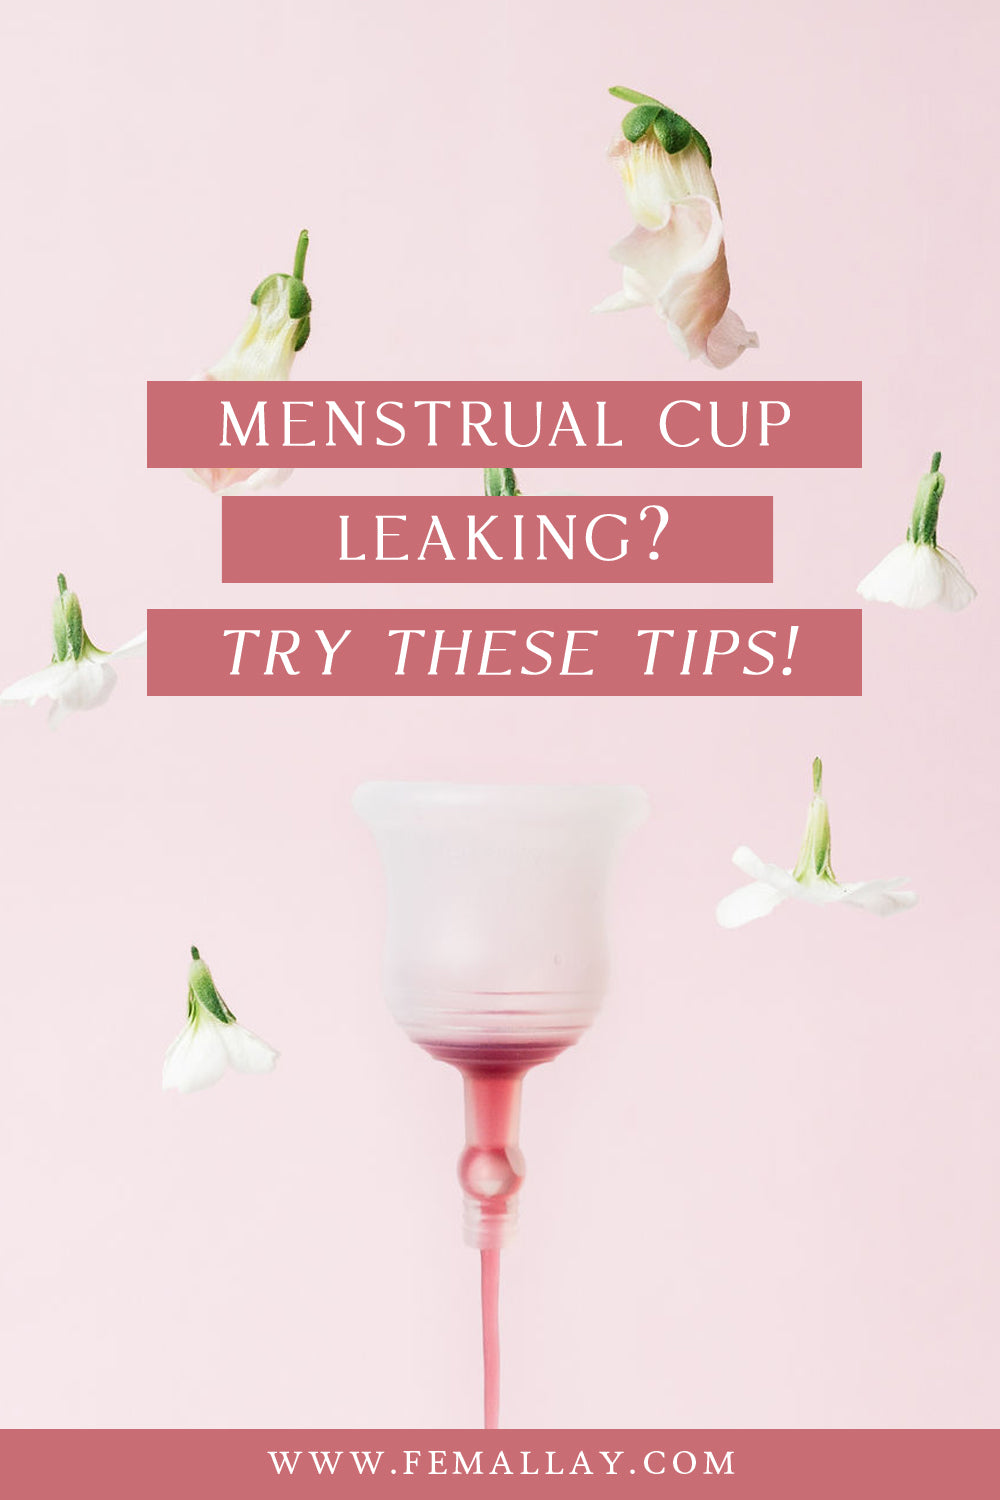 Graphique Pinterest pour une coupe menstruelle qui fuit Femallay